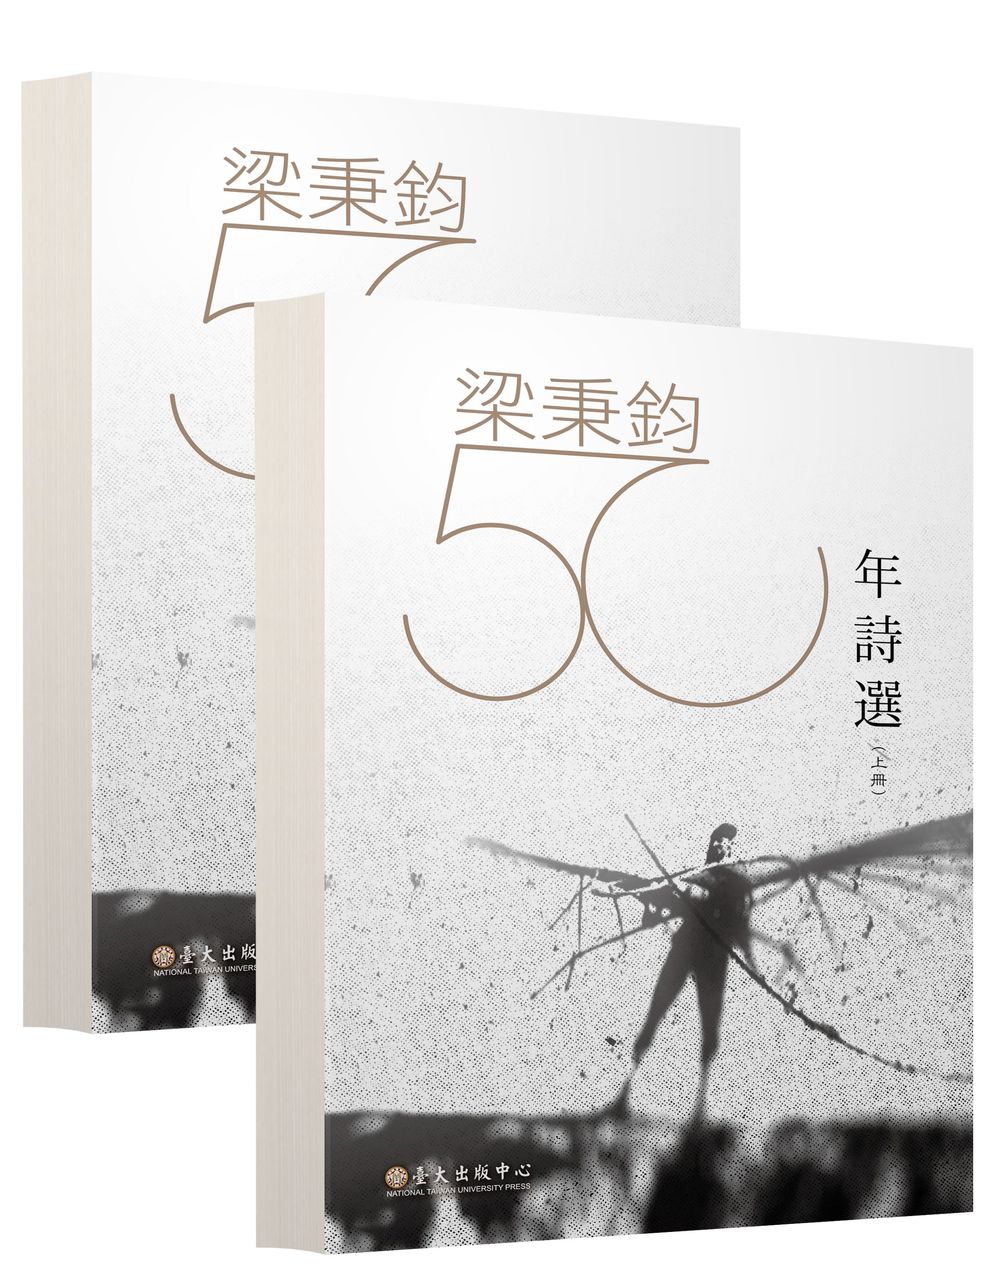 Selected Poems of Leung Ping-kwan, 1963-2012